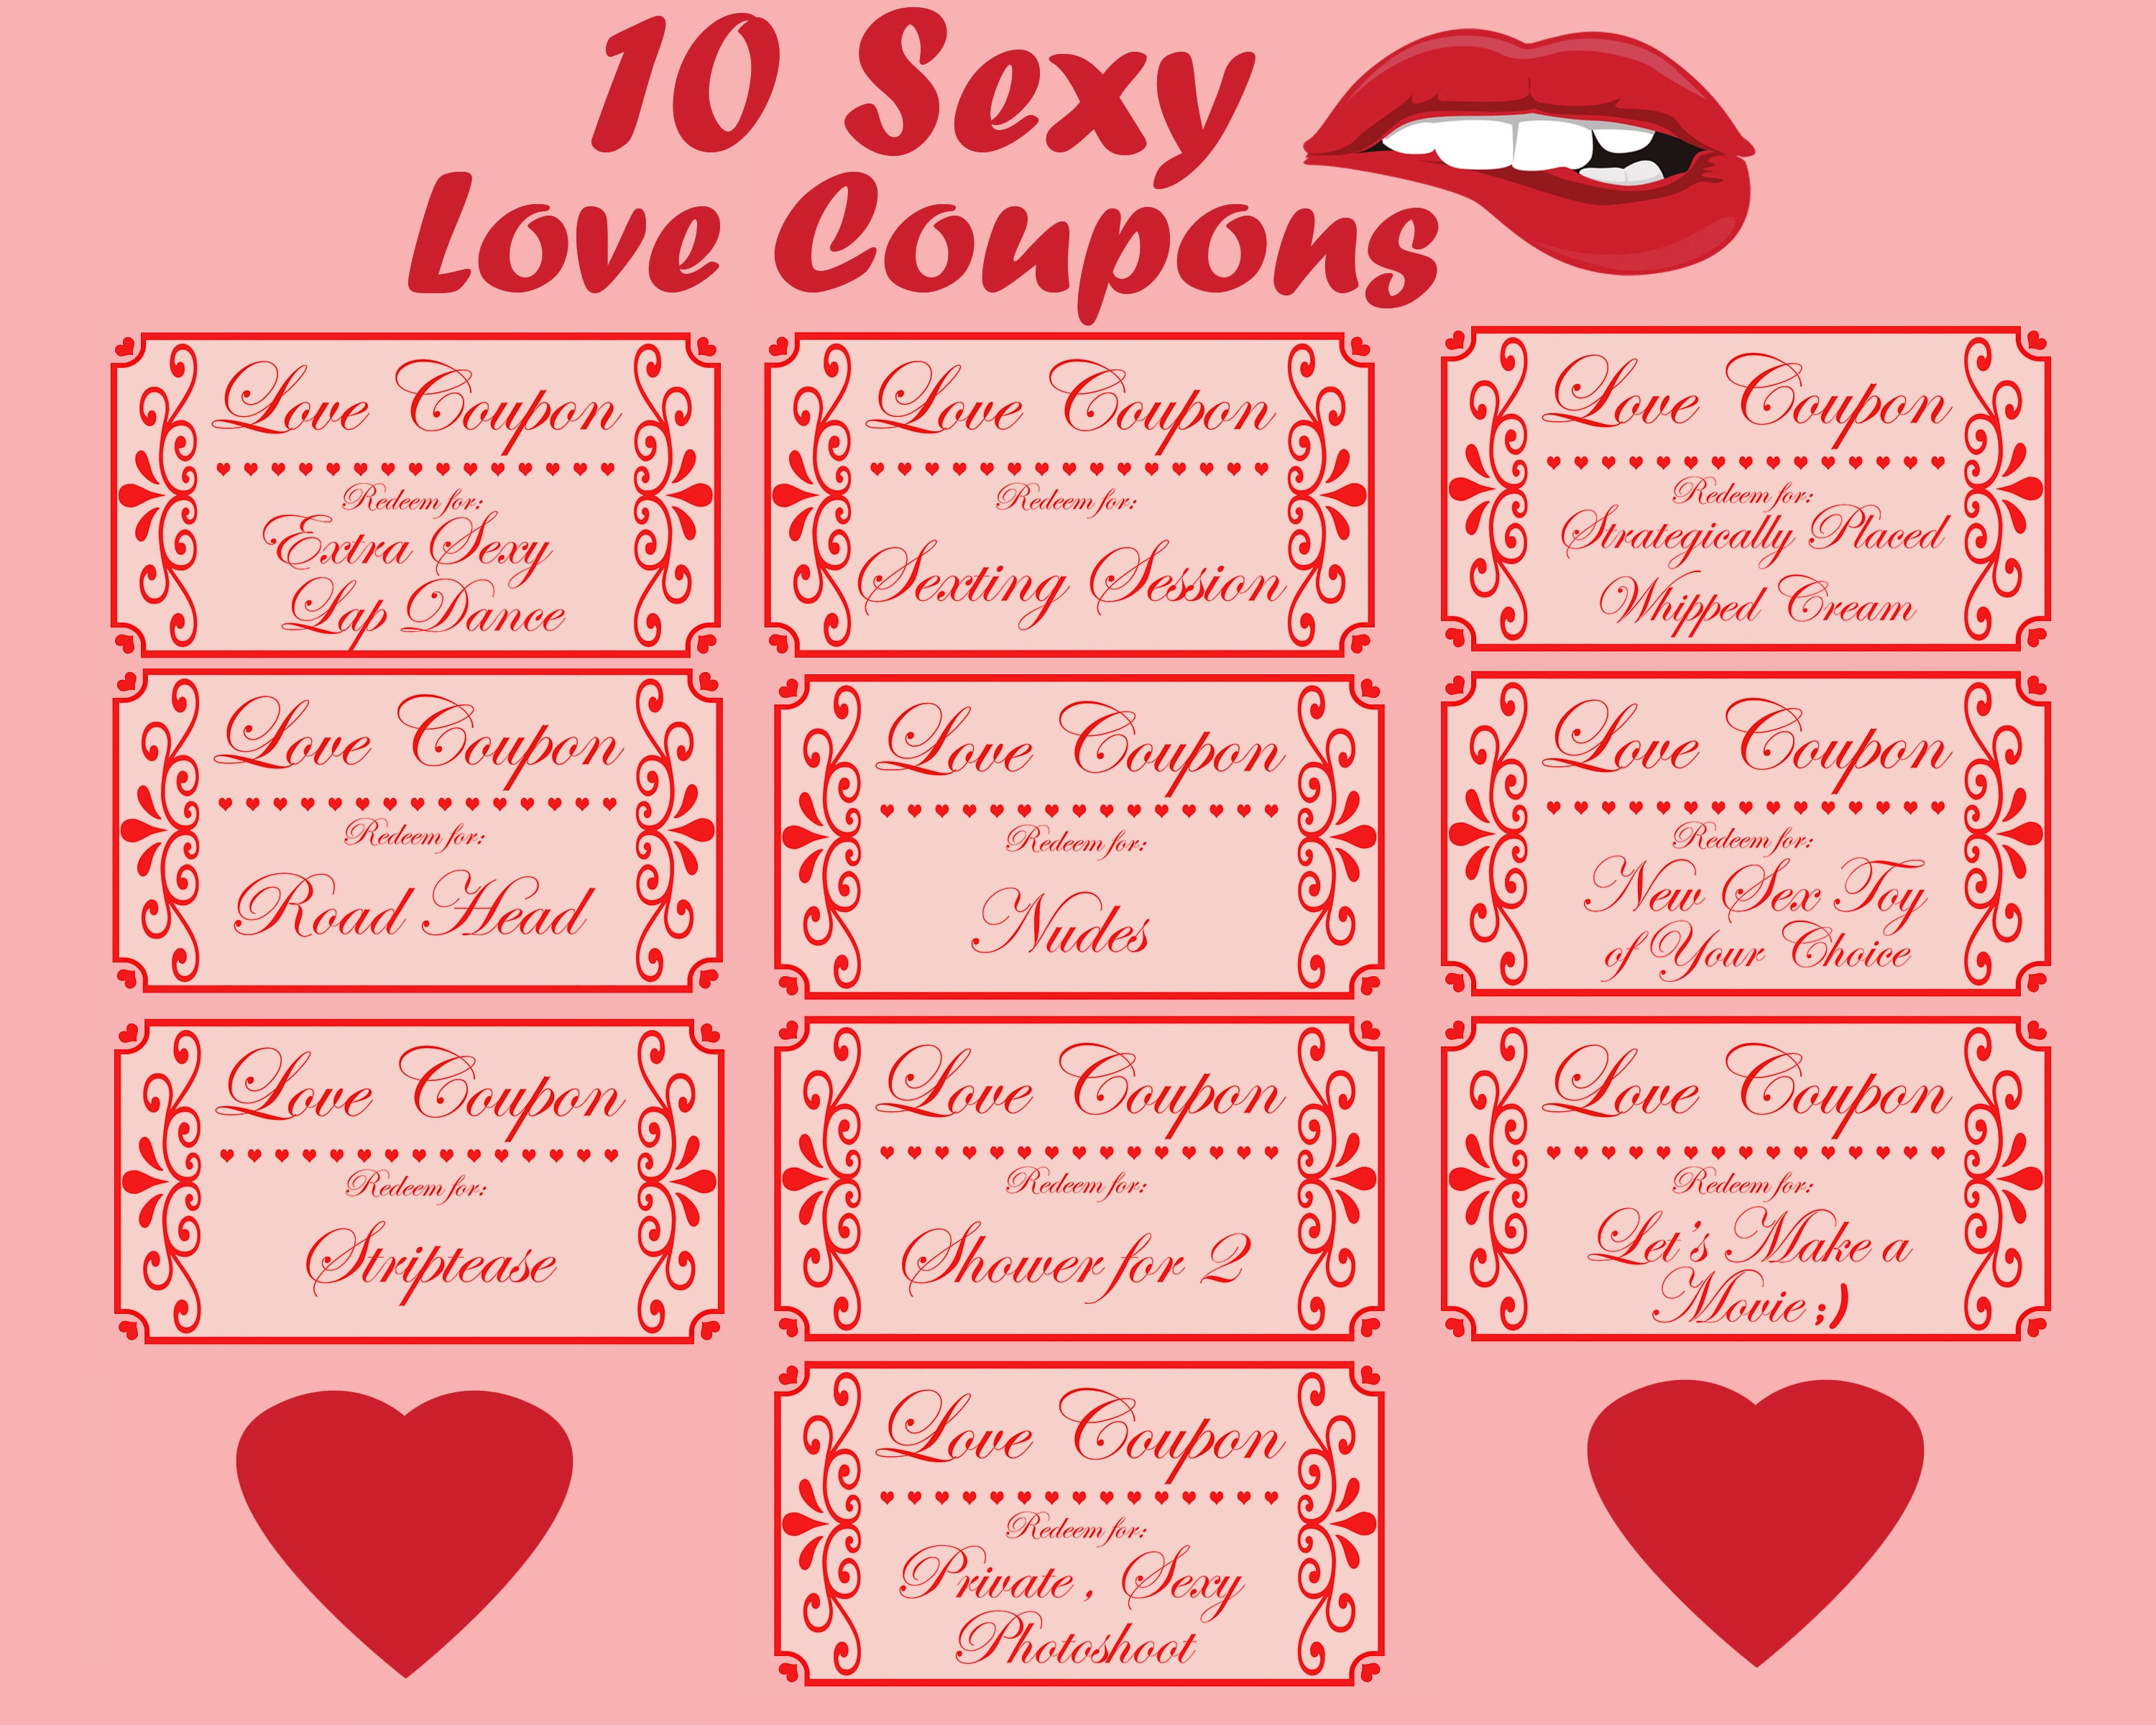 Canopy Street Cupones de amor divertidos y coquetos / Cupones para parejas  de 3 1/2 x 8 pulgadas / 15 recompensas románticas de cupones de relleno